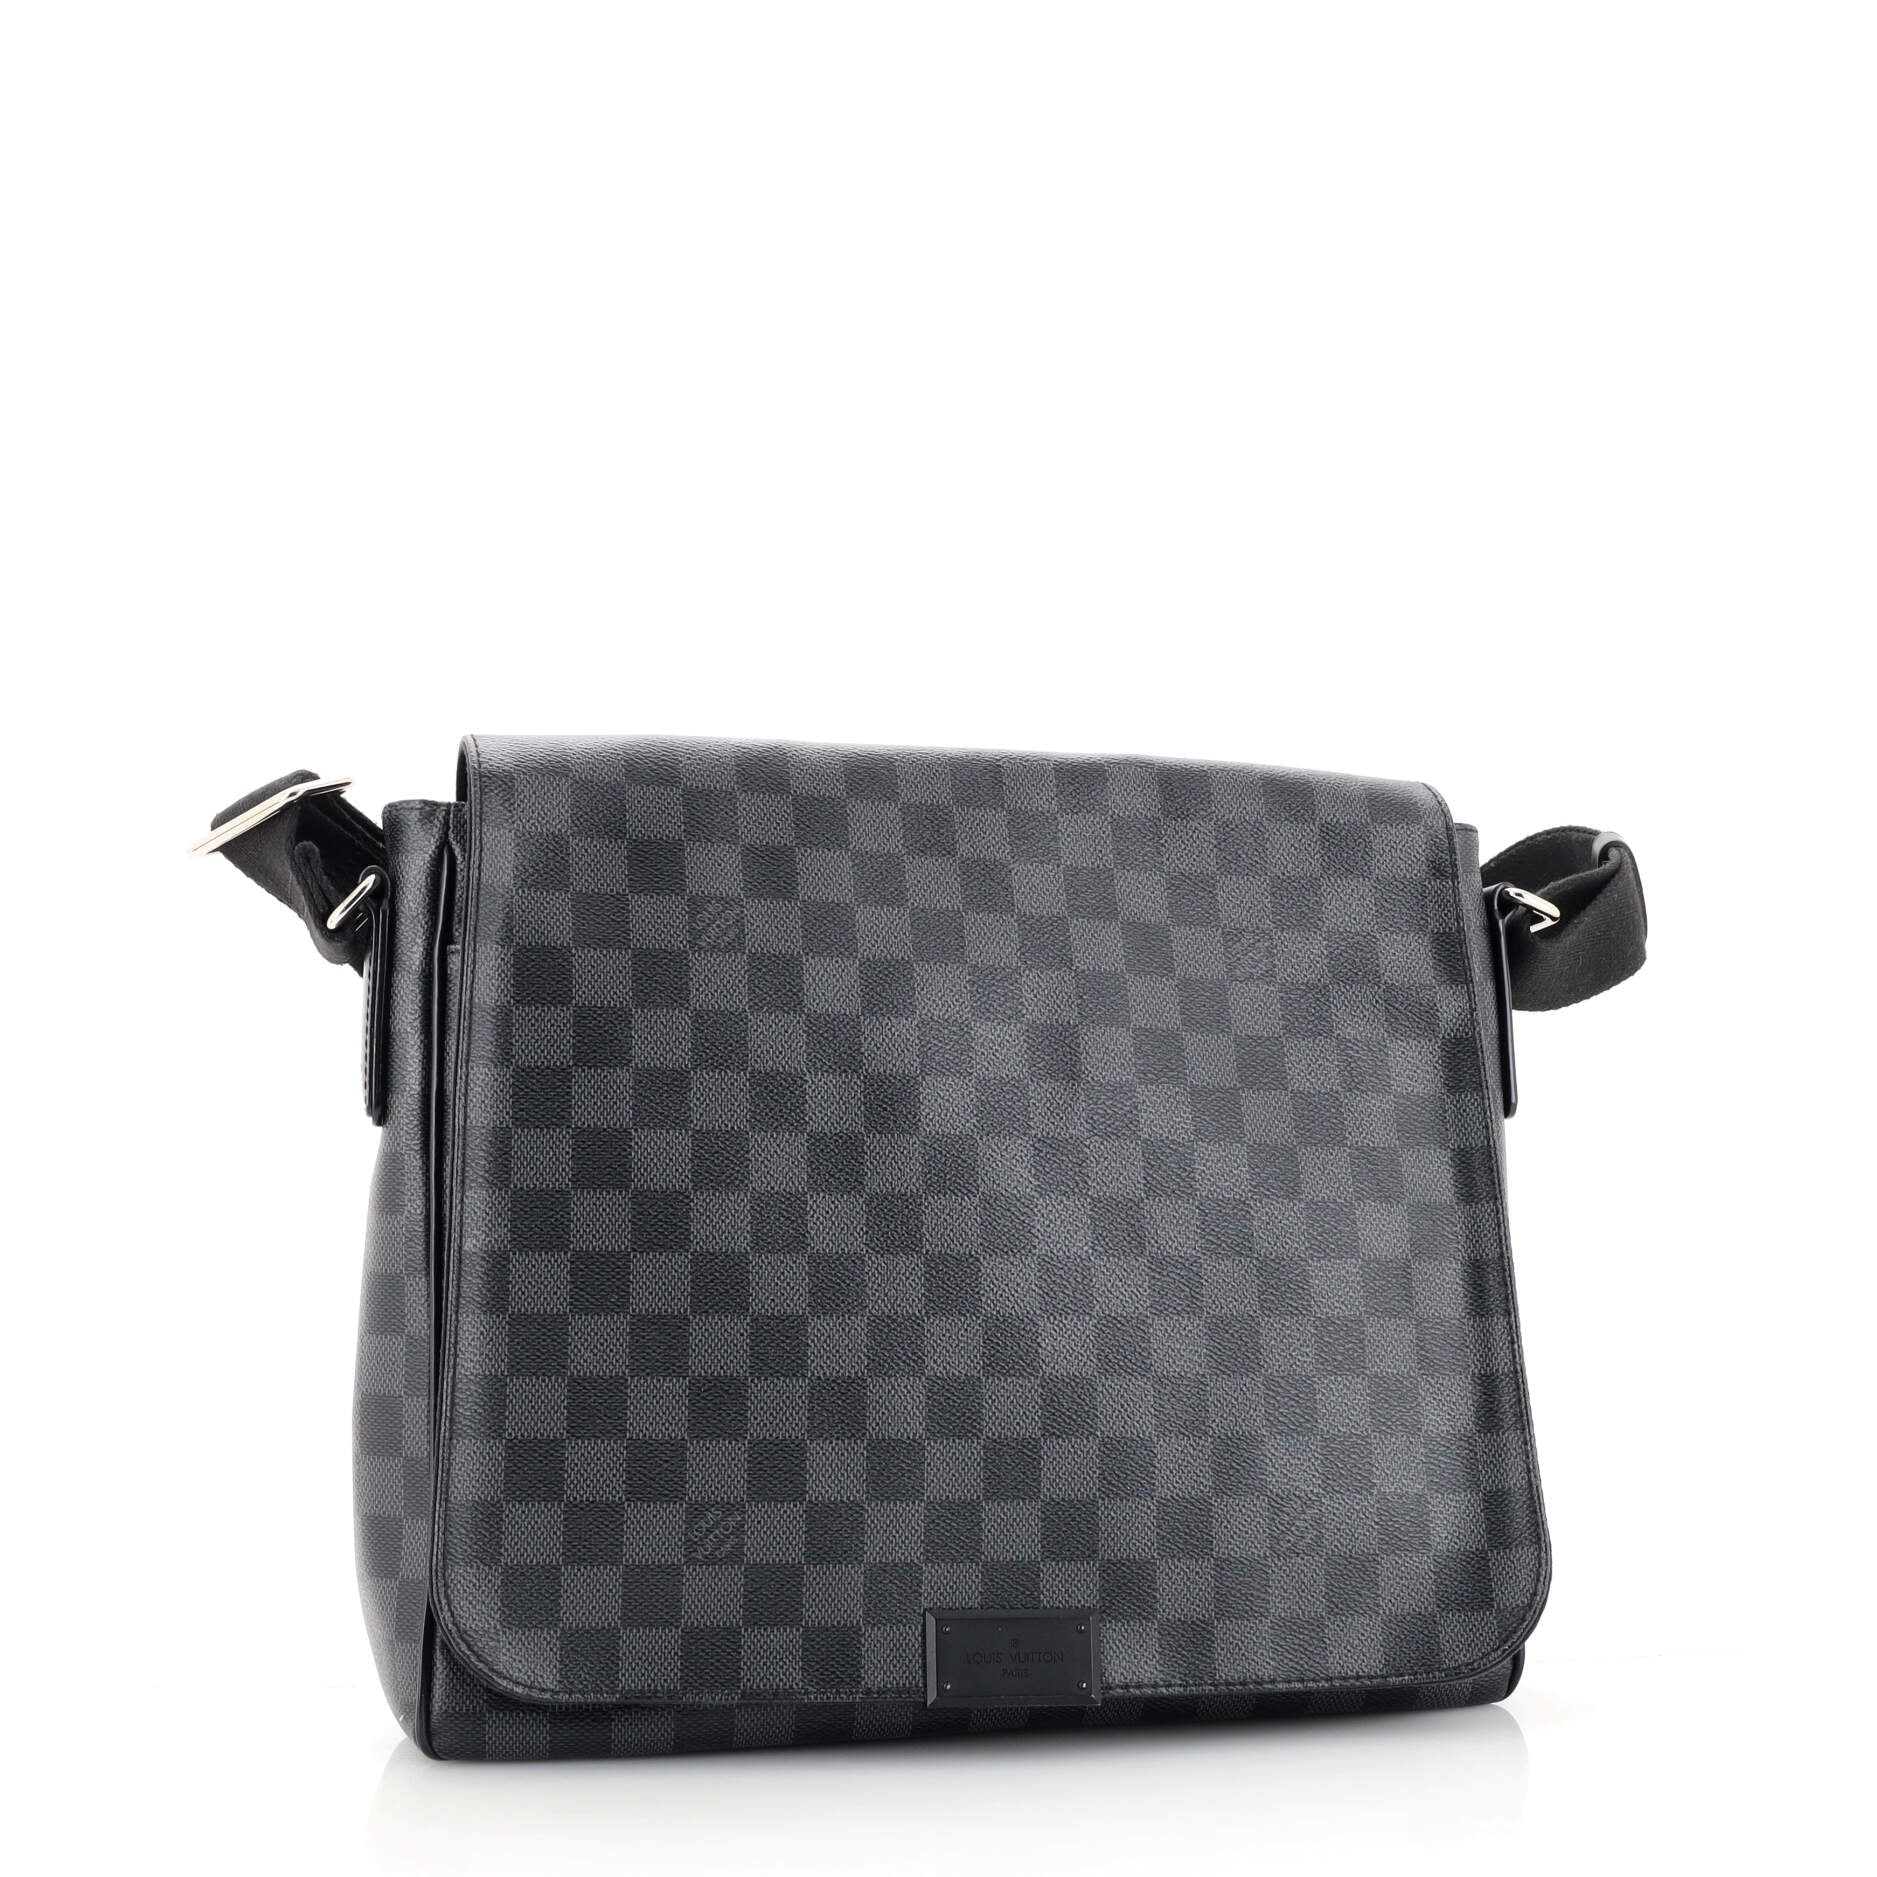 Louis Vuitton District GM Damier Graphite Coated Canvas Messenger Bag on  SALE